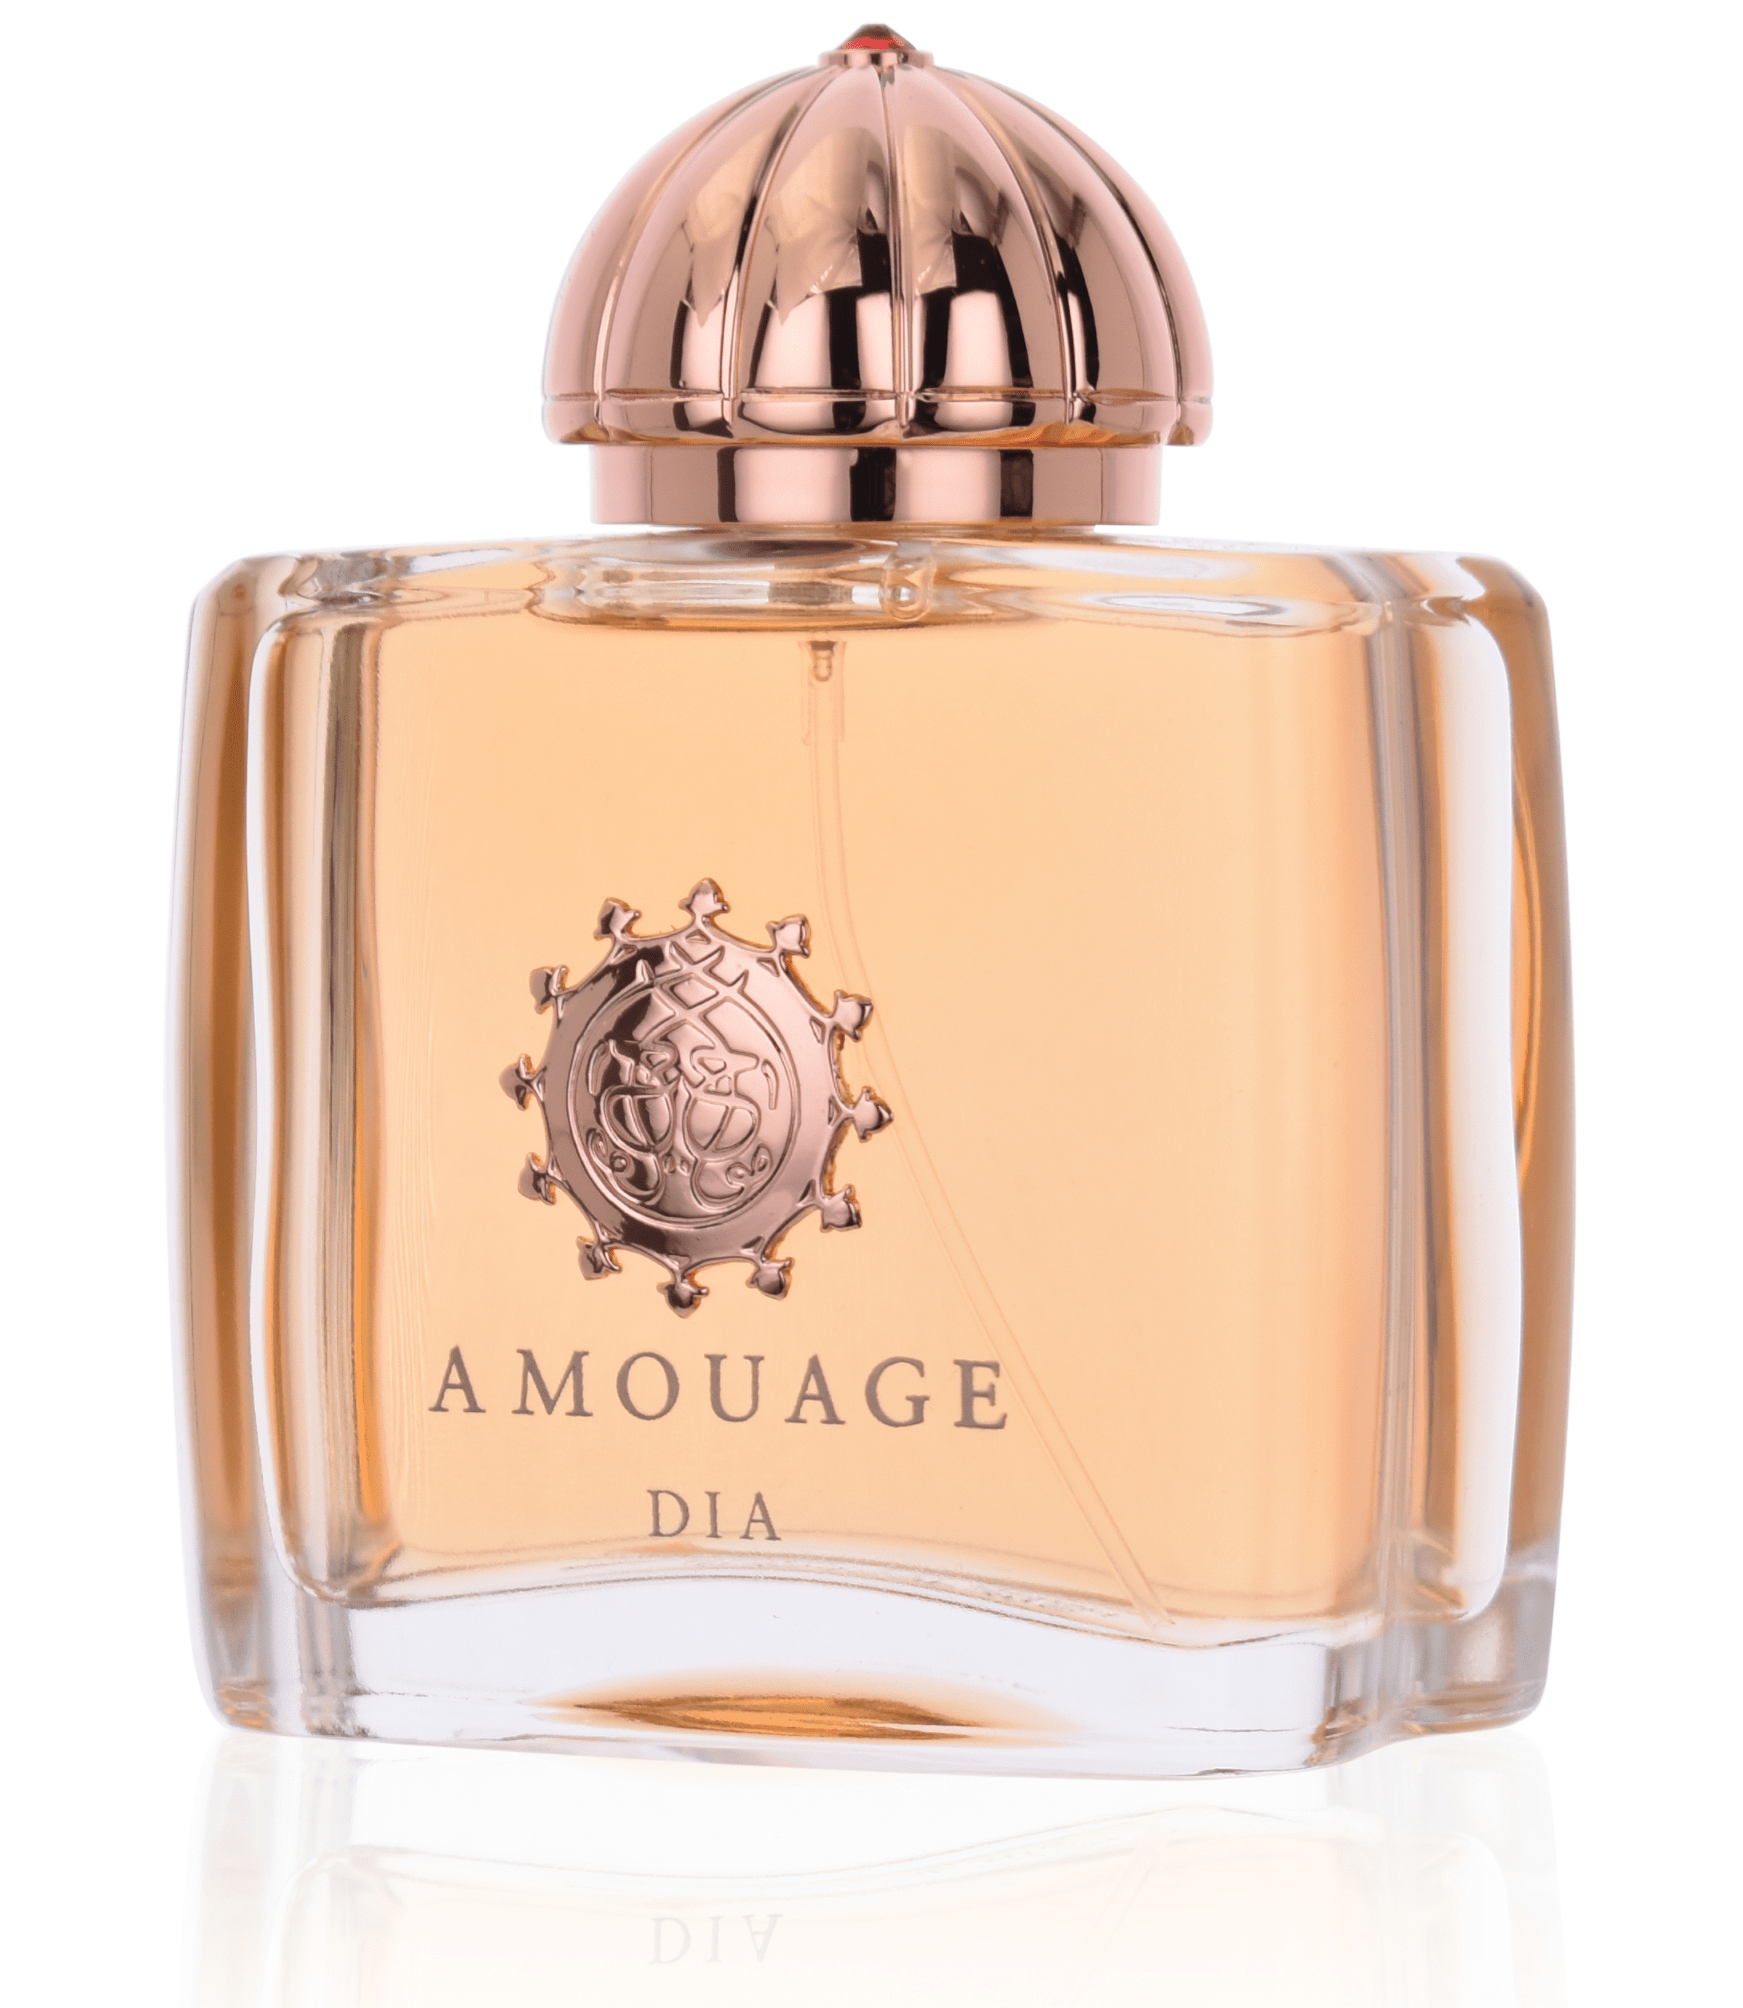 Amouage Dia Woman 5 ml Eau de Parfum Abfüllung